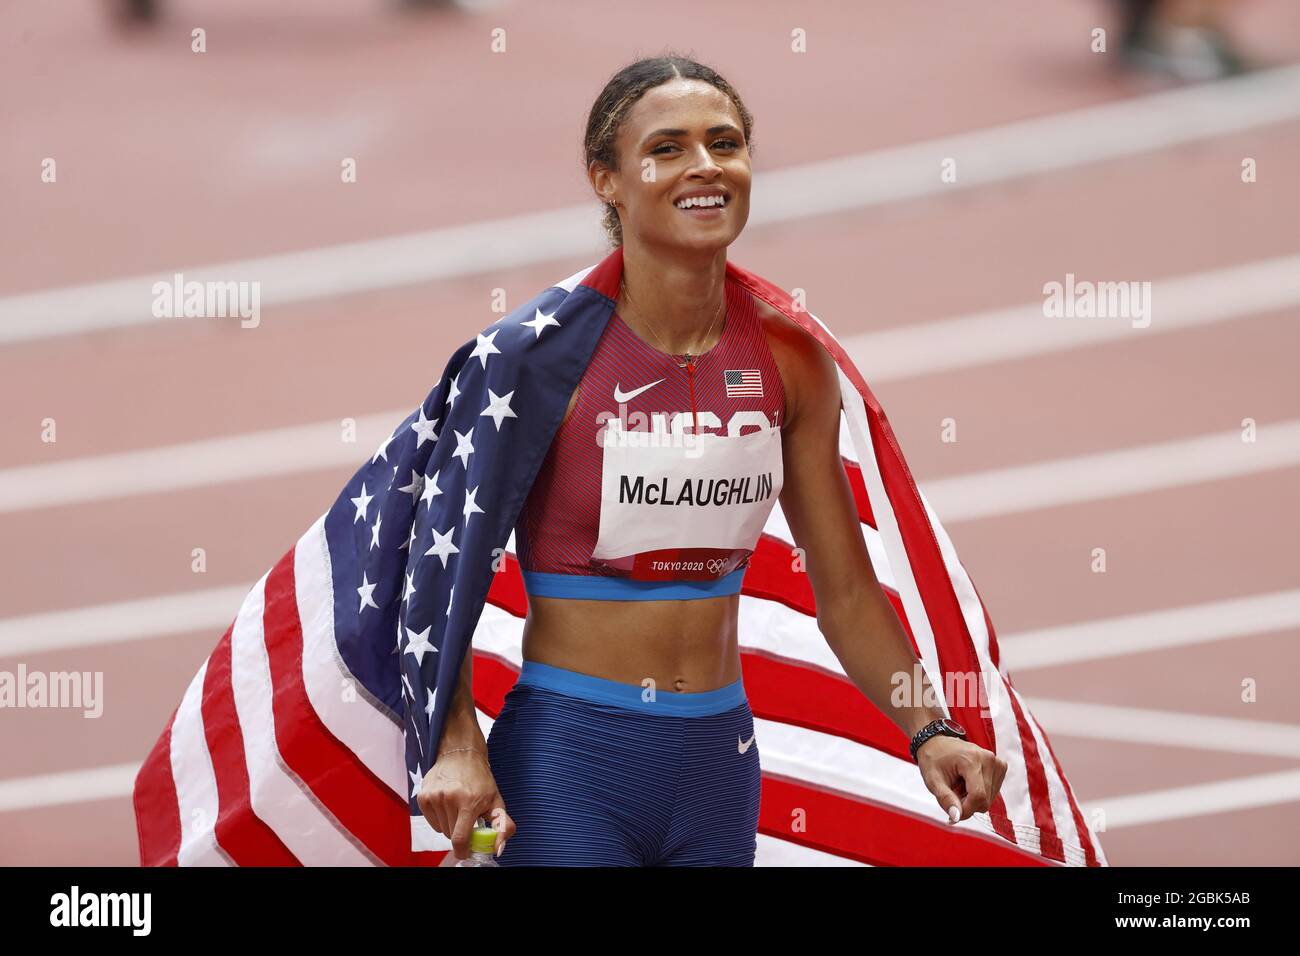 Sydney McLaughlin (USA) Gewinnerin der Goldmedaille während der Olympischen Spiele Tokio 2020, Leichtathletik-Finale der 400-m-Hürden der Frauen am 4. August 2021 im Olympiastadion in Tokio, Japan - Foto Kishimoto / DPPI Stockfoto